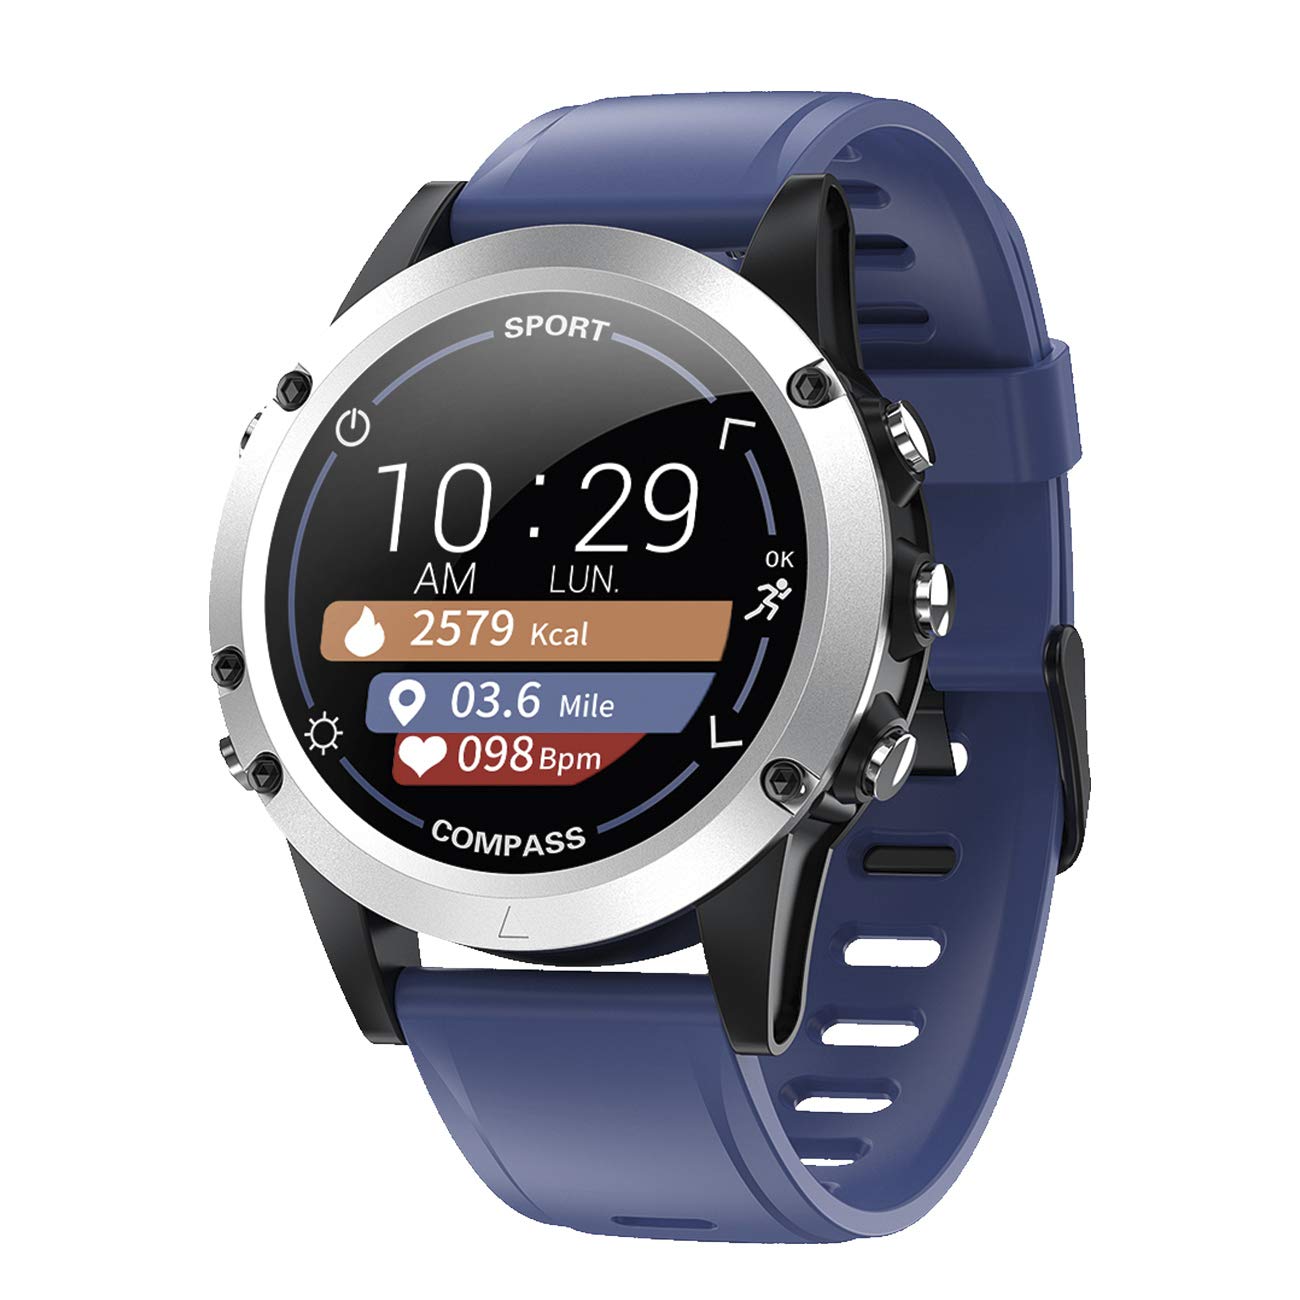 Fitnesstracker mit Herzfrequenz Puls Blutdruck Messung Kompass Schlaf Schrittzahl Farbdisplay Smartwatch Armband Uhr Blau - 9714/5